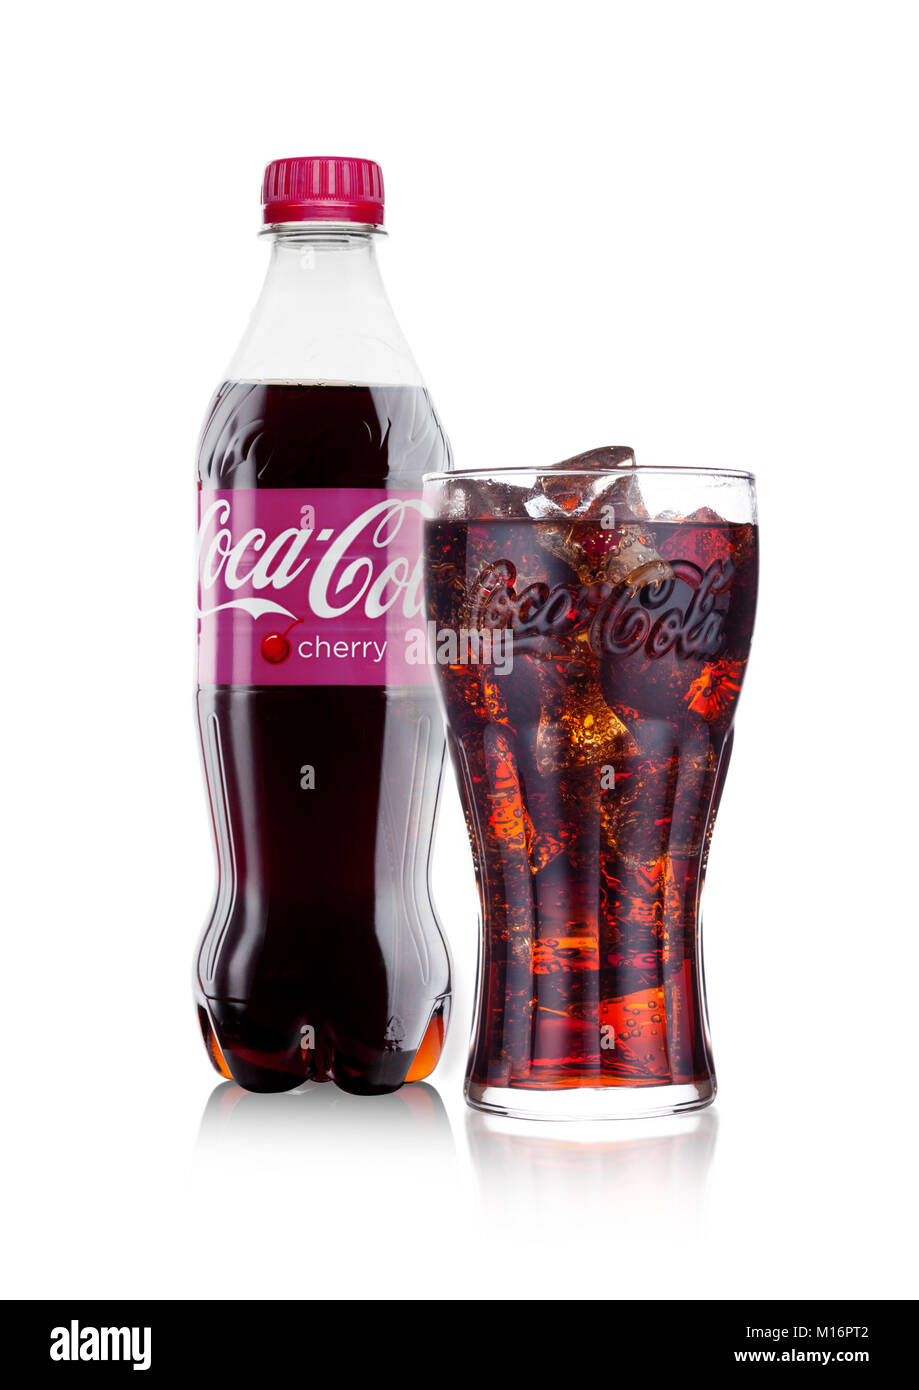 Londres, Royaume-Uni - 24 janvier 2018 : Bouteille et verre de Cherry Coca-Cola  sur fond blanc. Coca-Cola est l'un des plus populaires de soude produits  dans la wor Photo Stock - Alamy